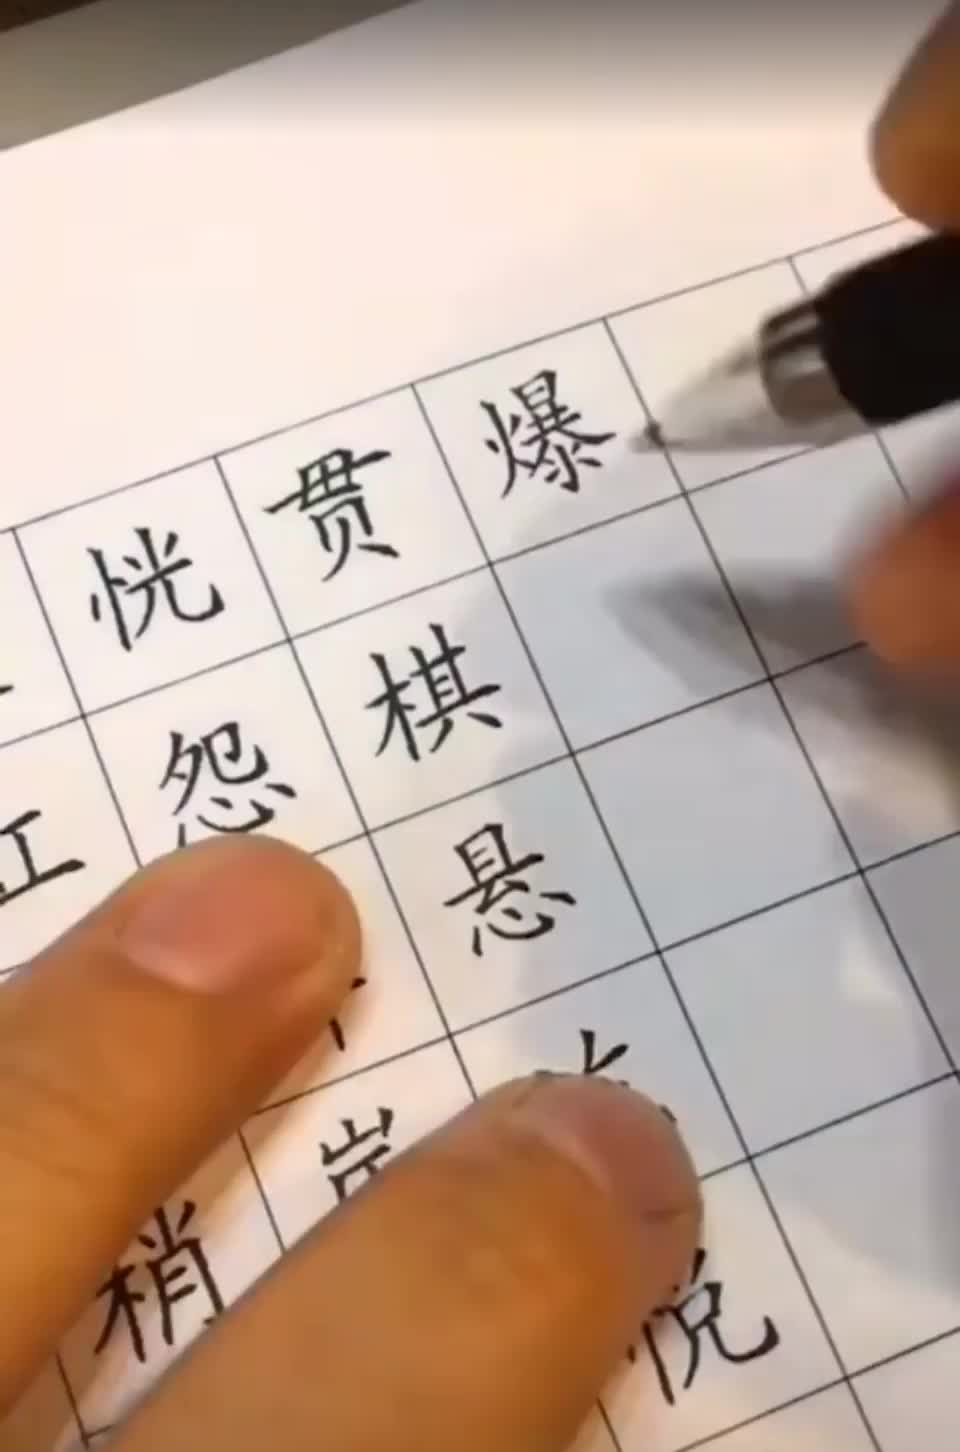 Написание китайских иероглифов